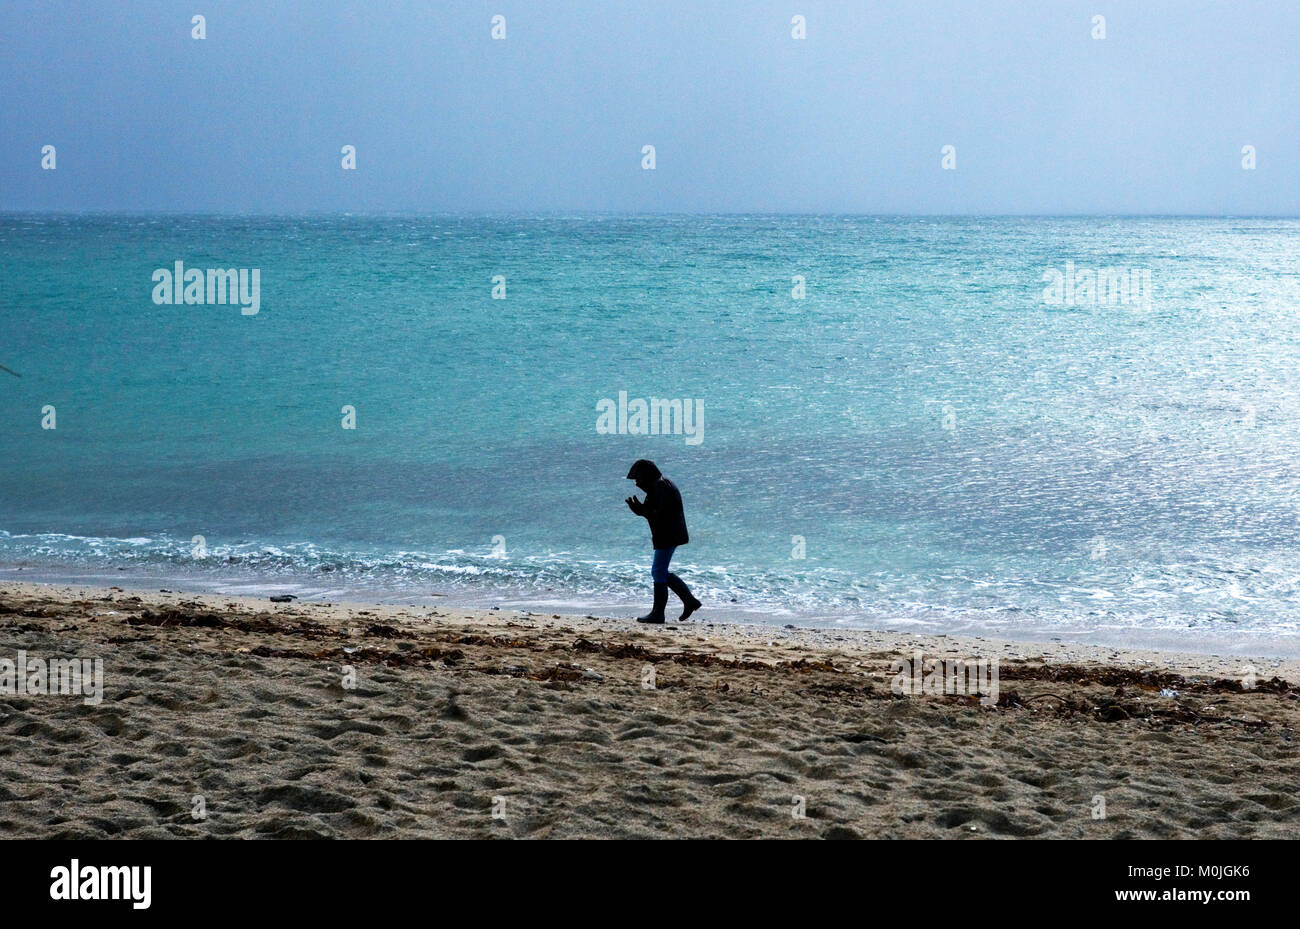 Un touriste se promène le long de la plage de Towan, près de Portscatho sur la péninsule de Roseland, à Cornwall, Angleterre, le 29 décembre 2017 Banque D'Images